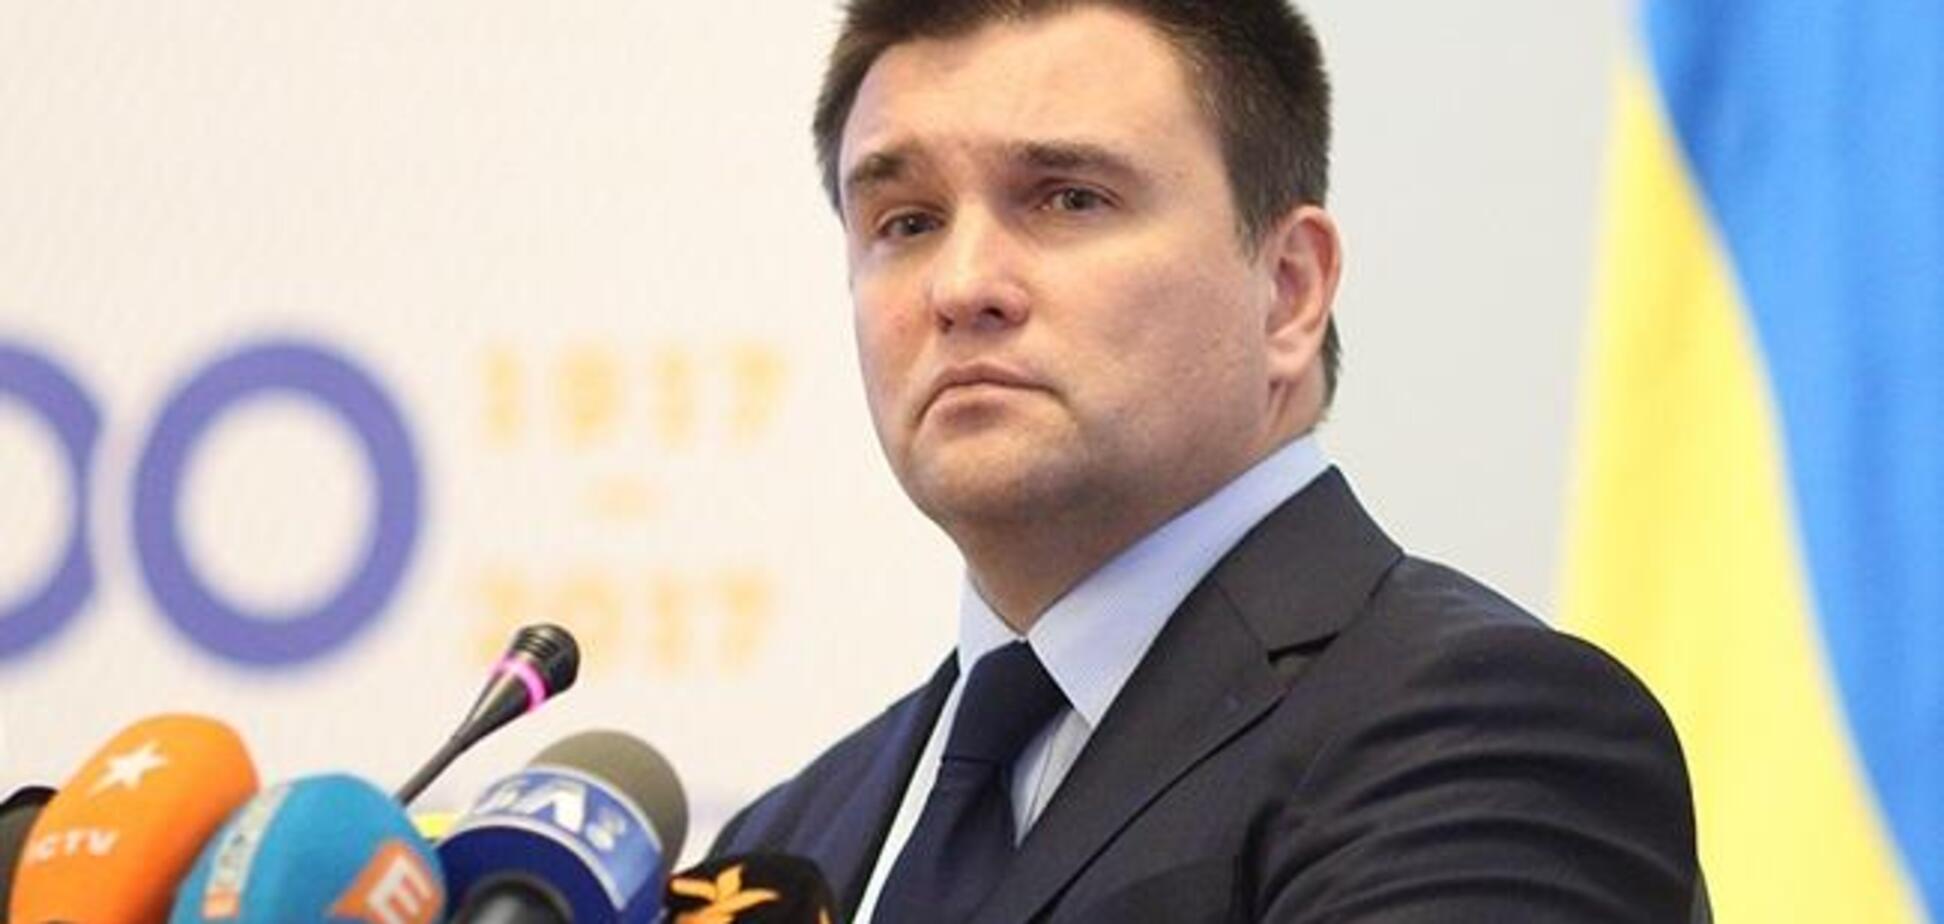 МЗС України запропонував вийти з СНД і розірвати дружбу з Росією